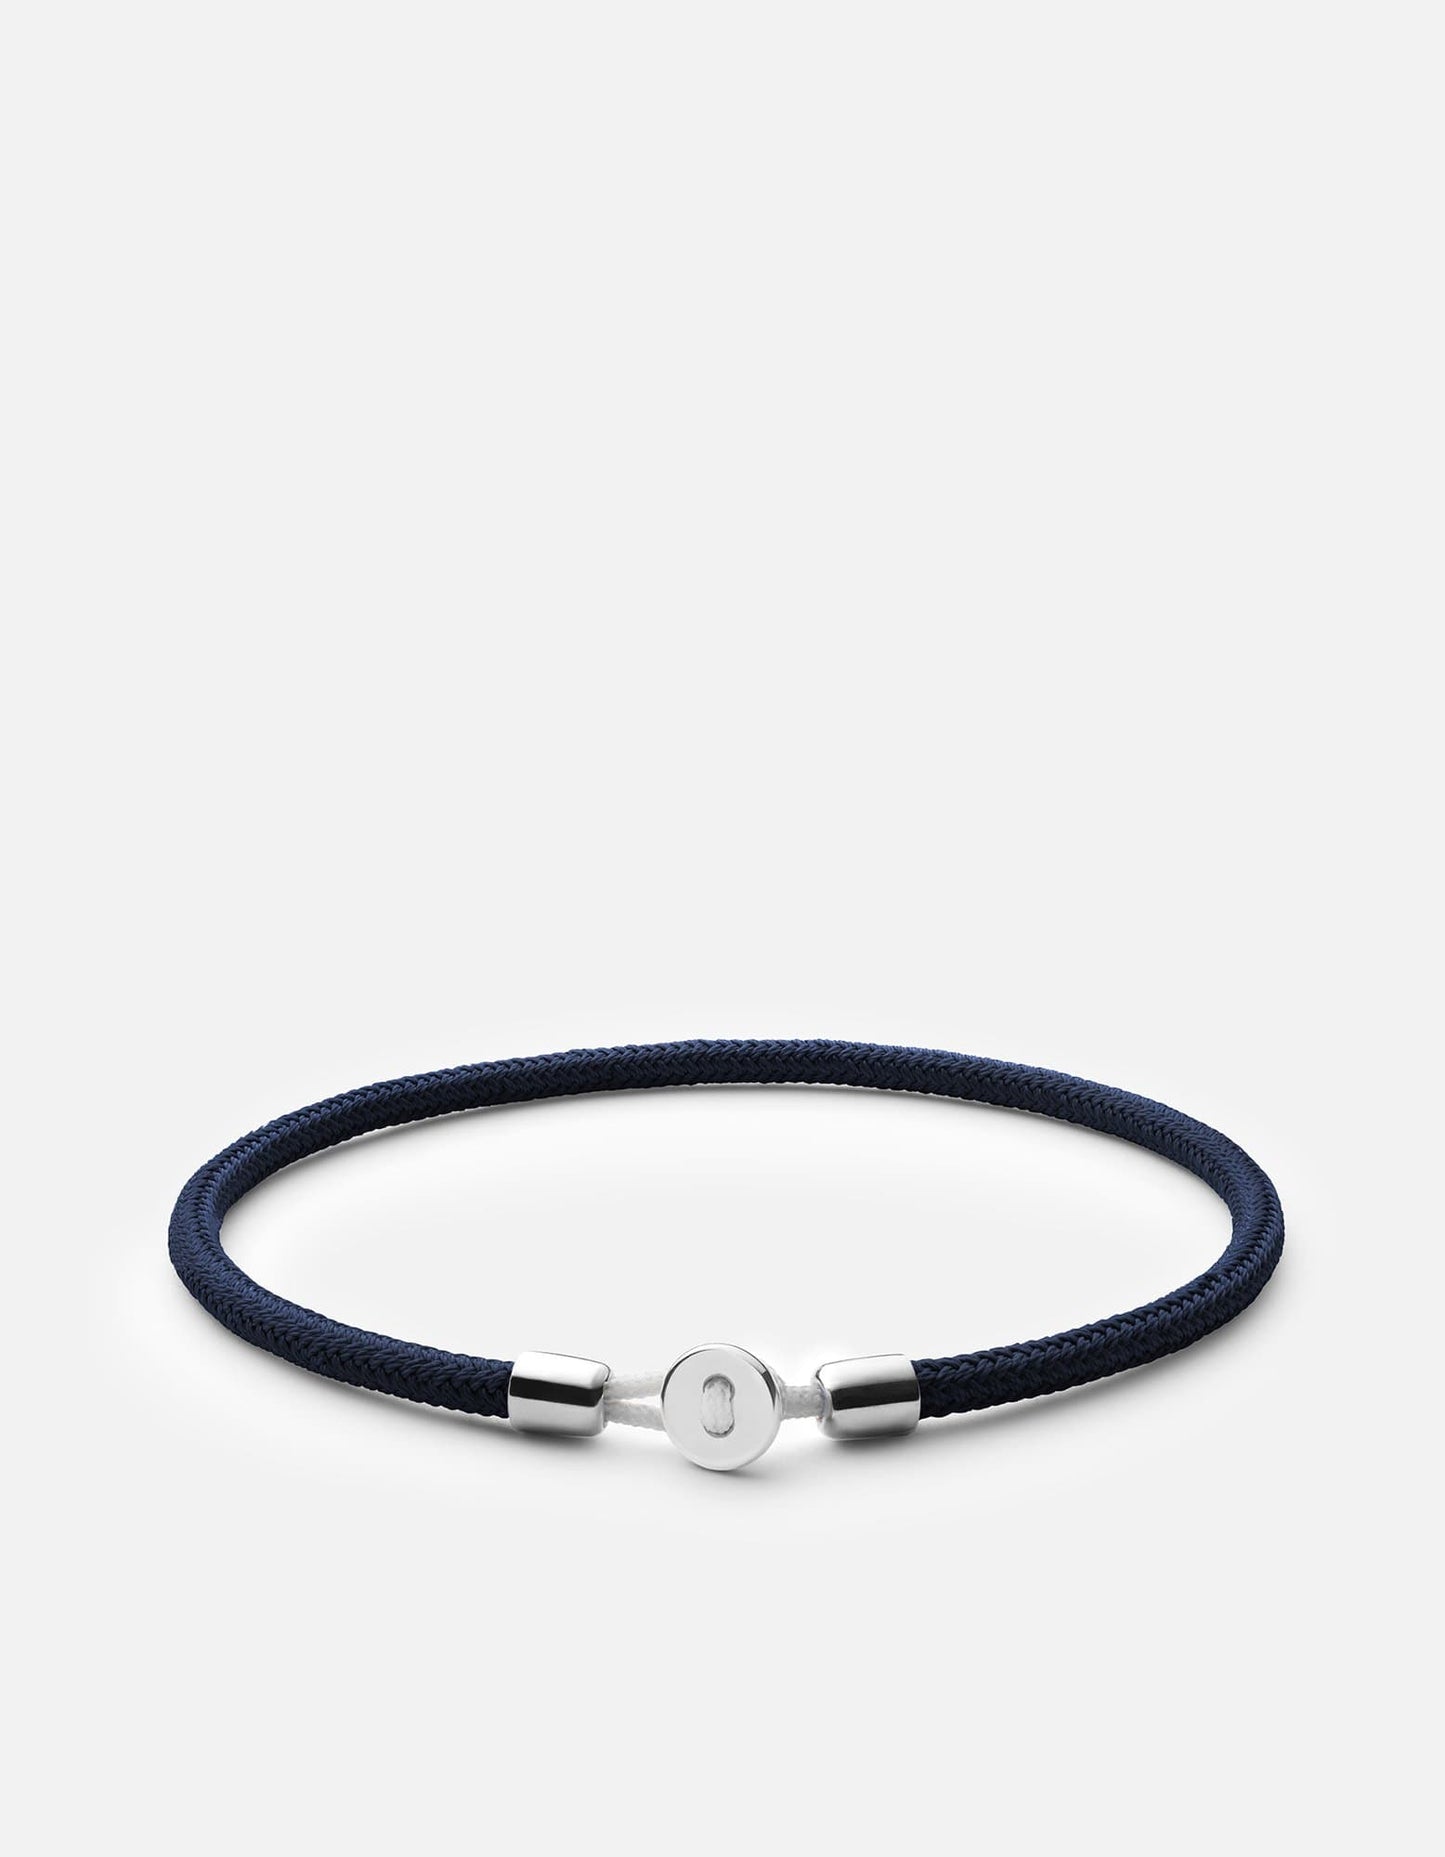 Nexus Rope Bracelet, Sterling Silver